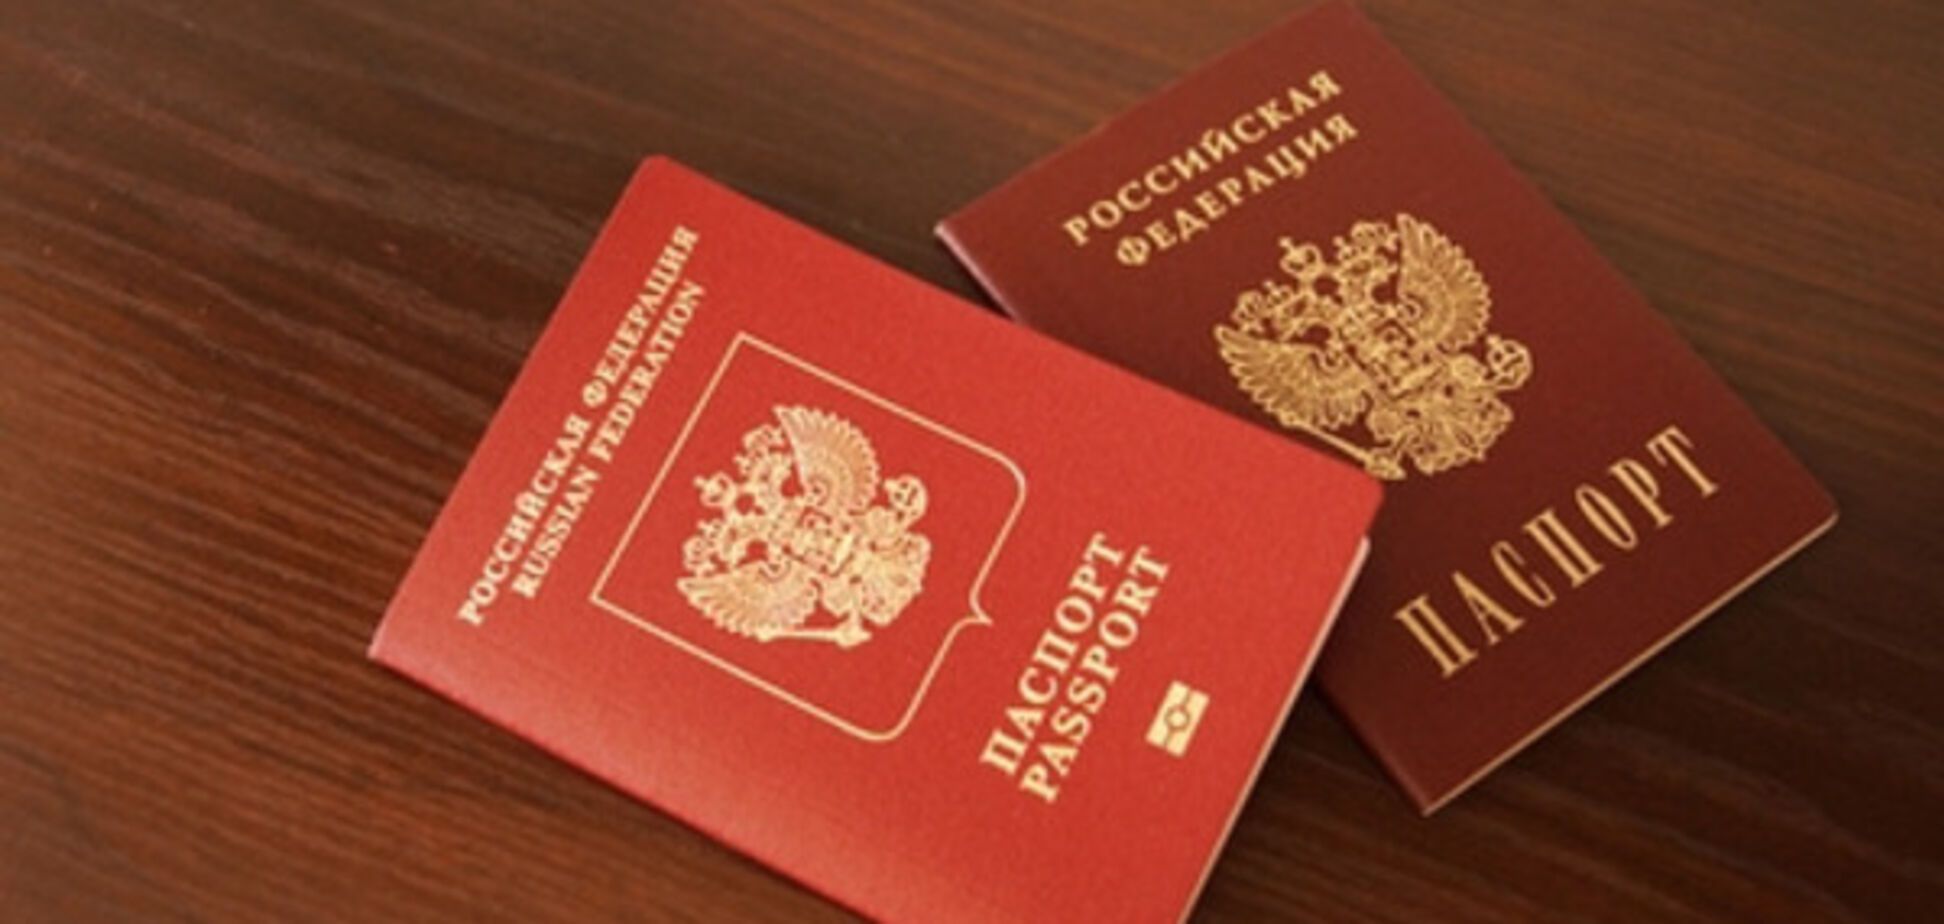 біометричний паспорт